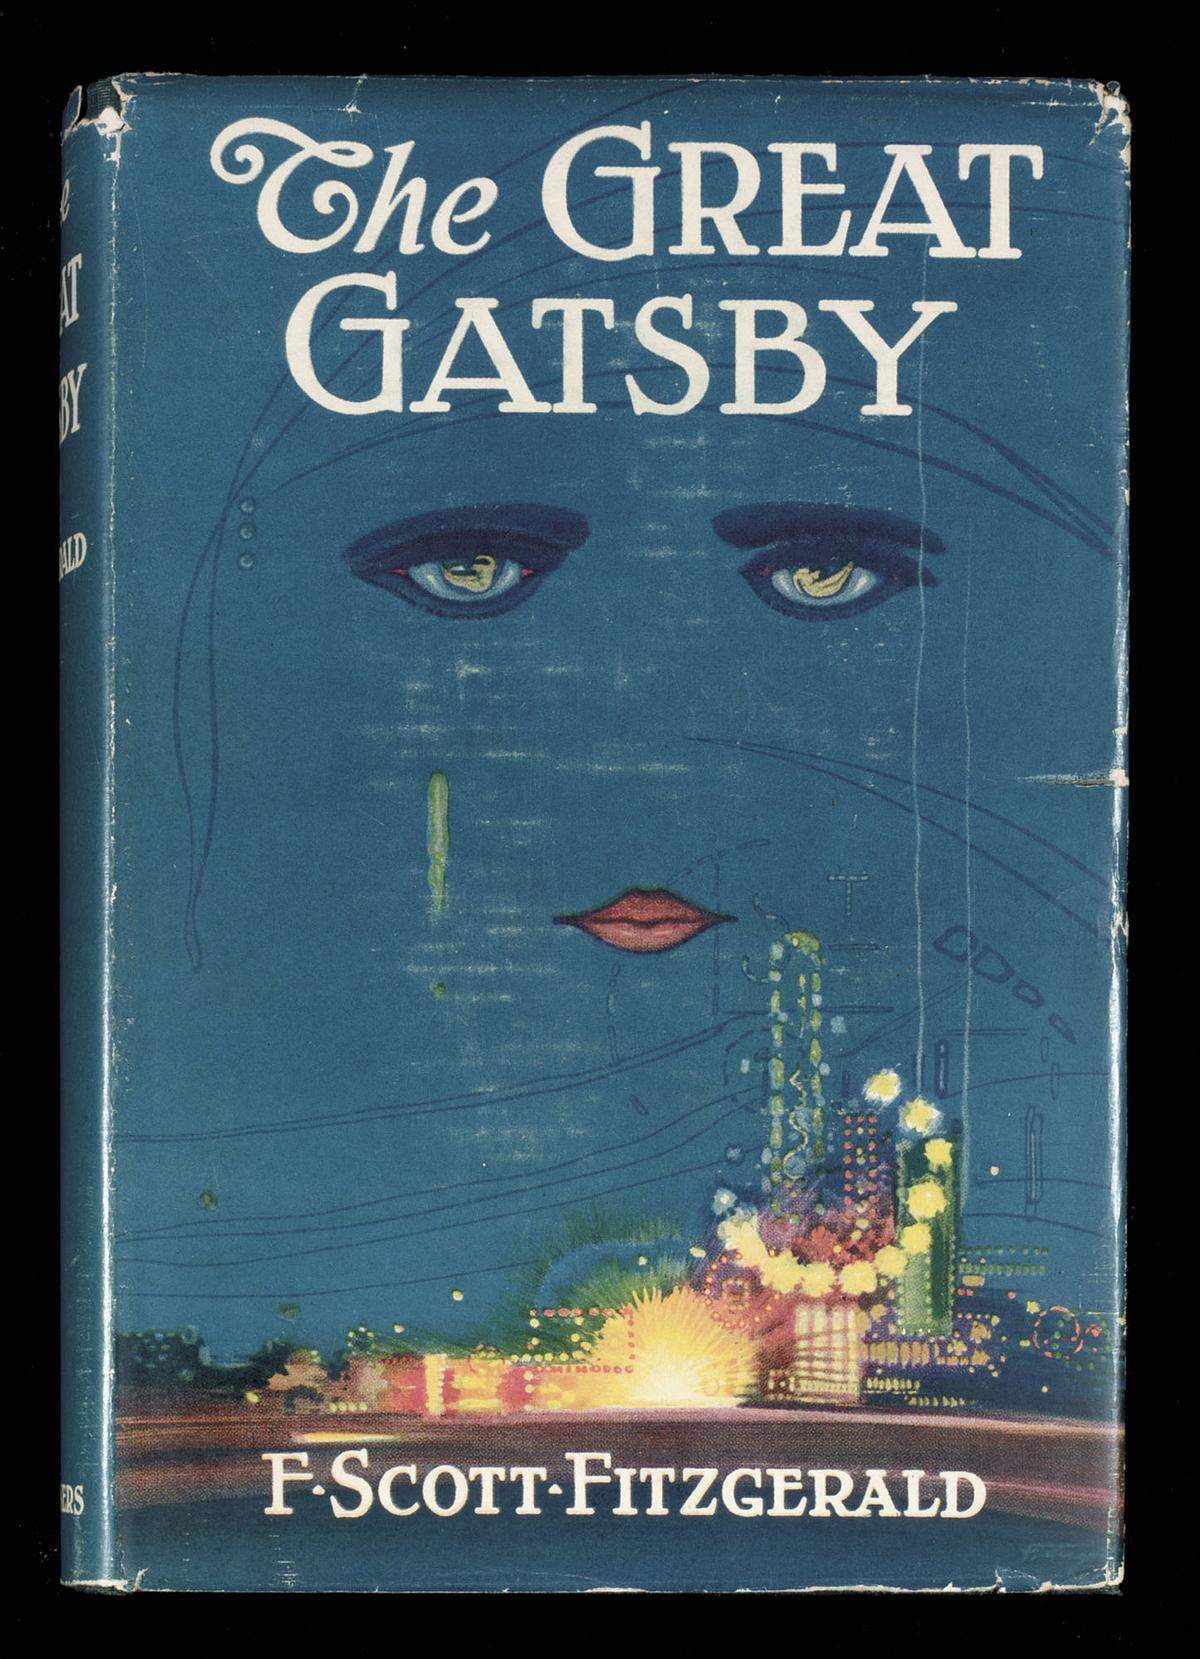 Kein Wunder, dass Fitzgeralds Roman als unverfilmbar gilt, auch wenn er sich in vieler Hinsicht wie ein Film liest, wie "Presse"Kritiker Christoph Huber schreibt. "Viele Szenen bleiben wie Momentaufnahmen im Kopf hängen", aber "das wahre Herz von 'Der große Gatsby' schlägt eigentlich in dem, was zwischen den Ereignissen liegt."